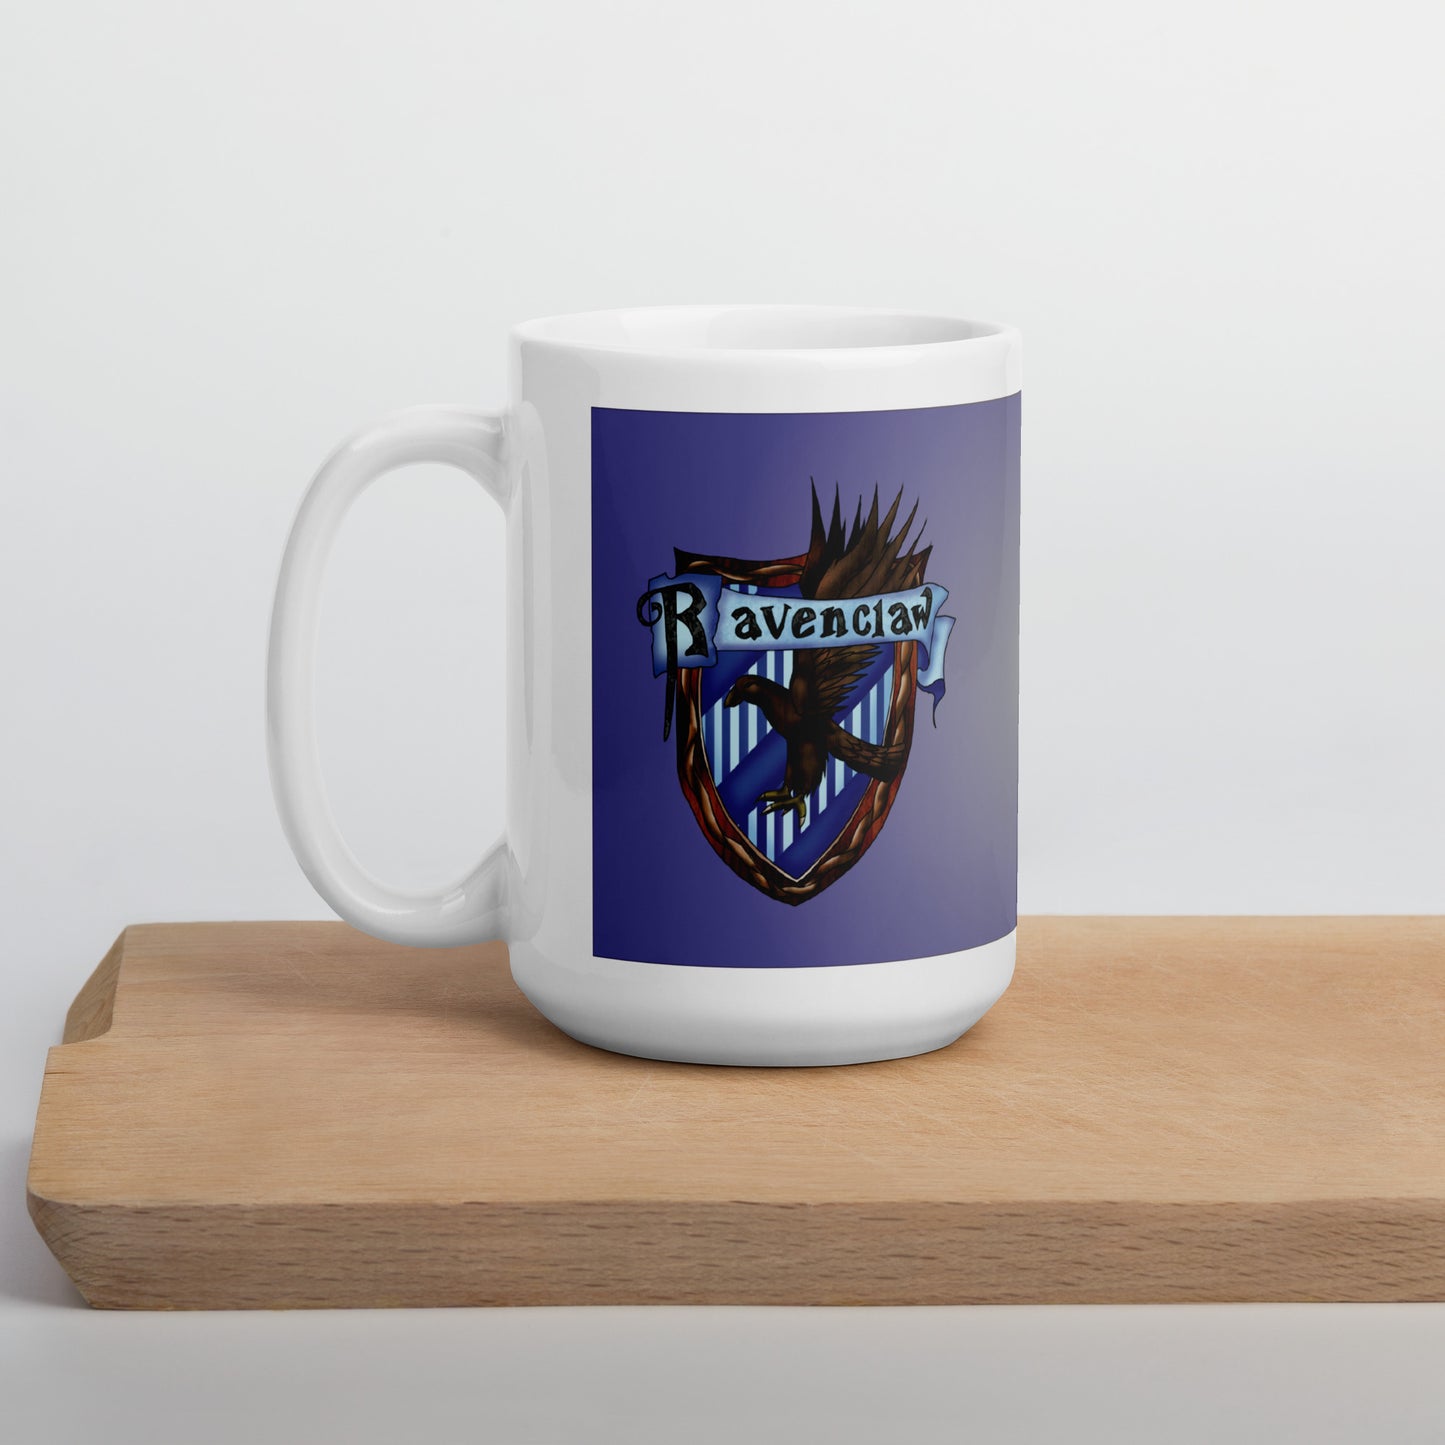 Ravenclaw Shield Mug